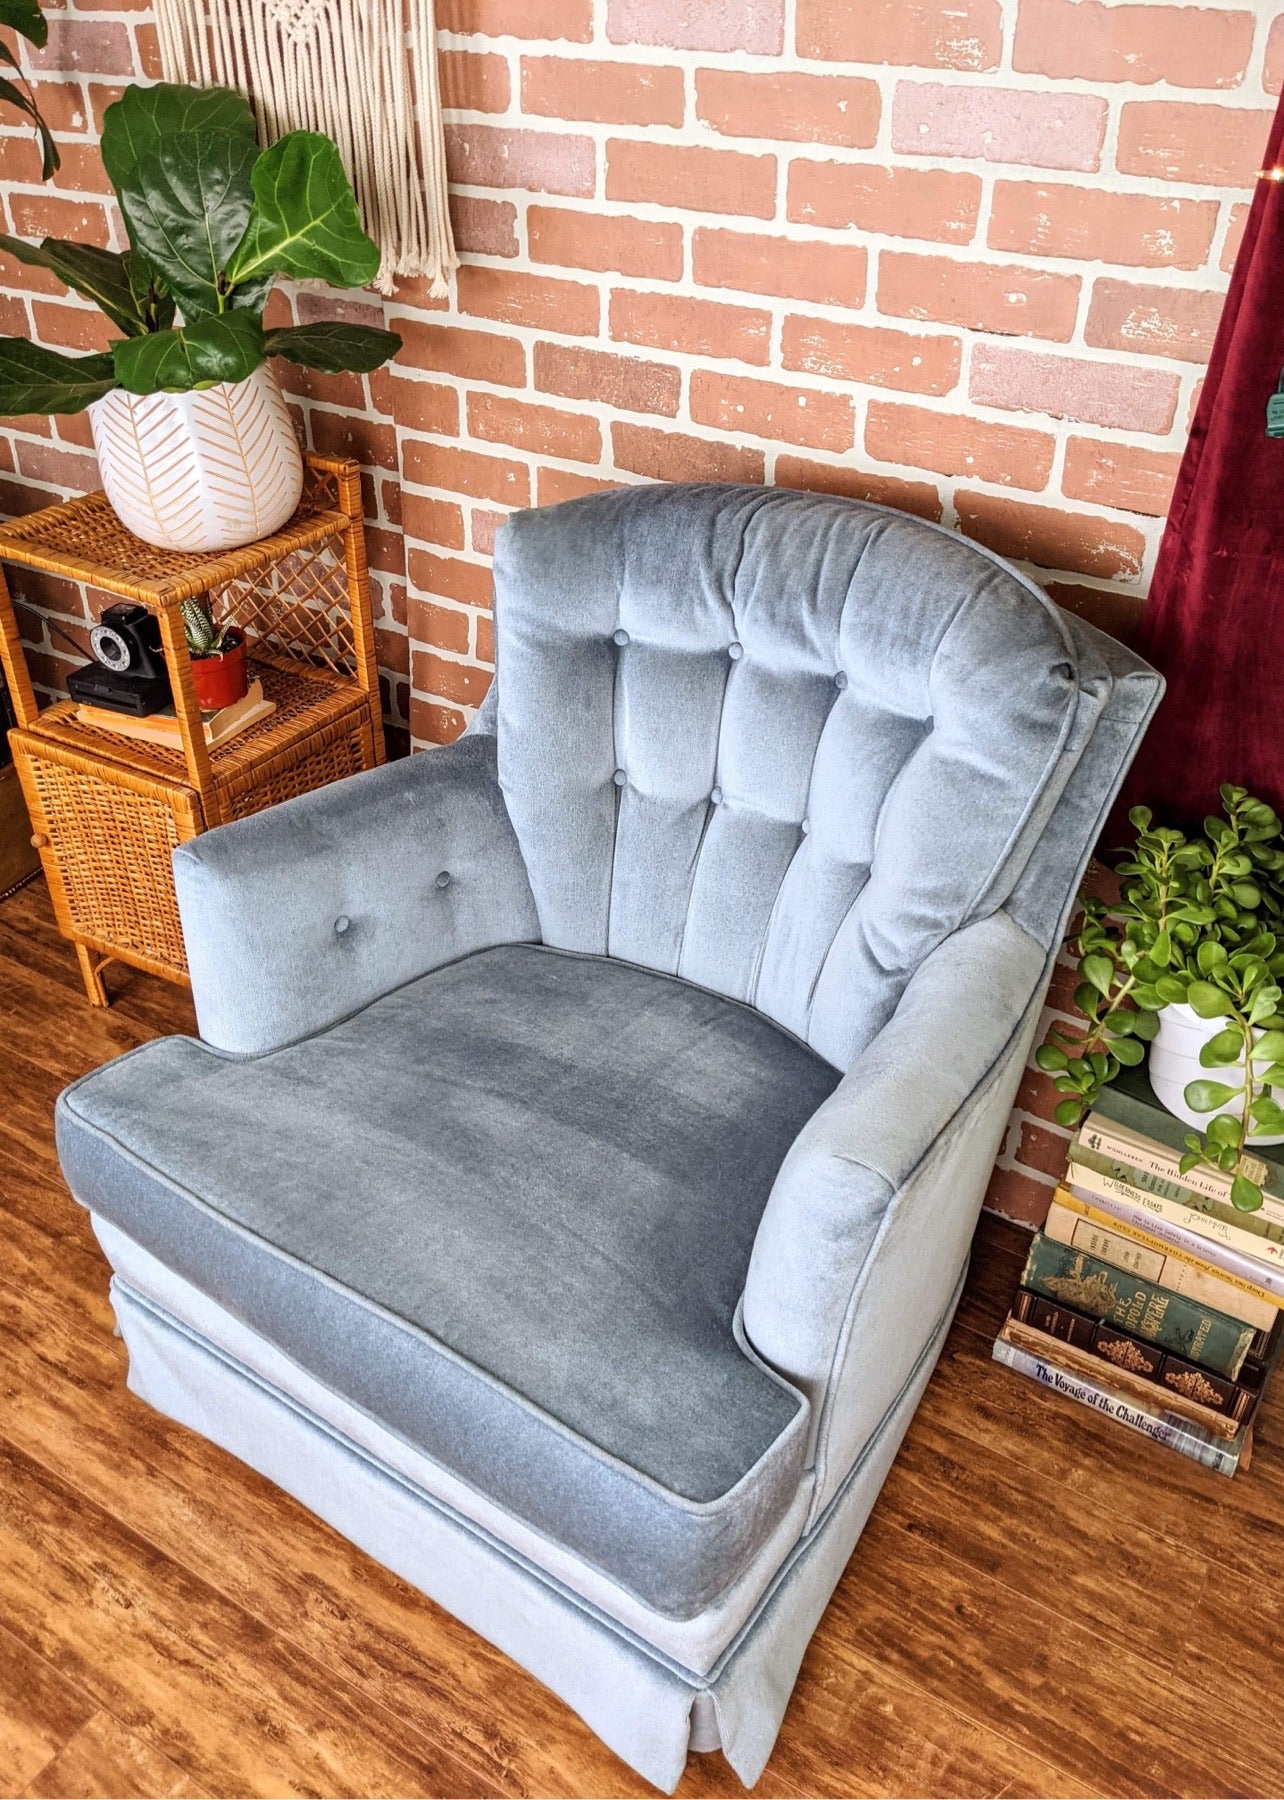 The Cozy Blue Armchair